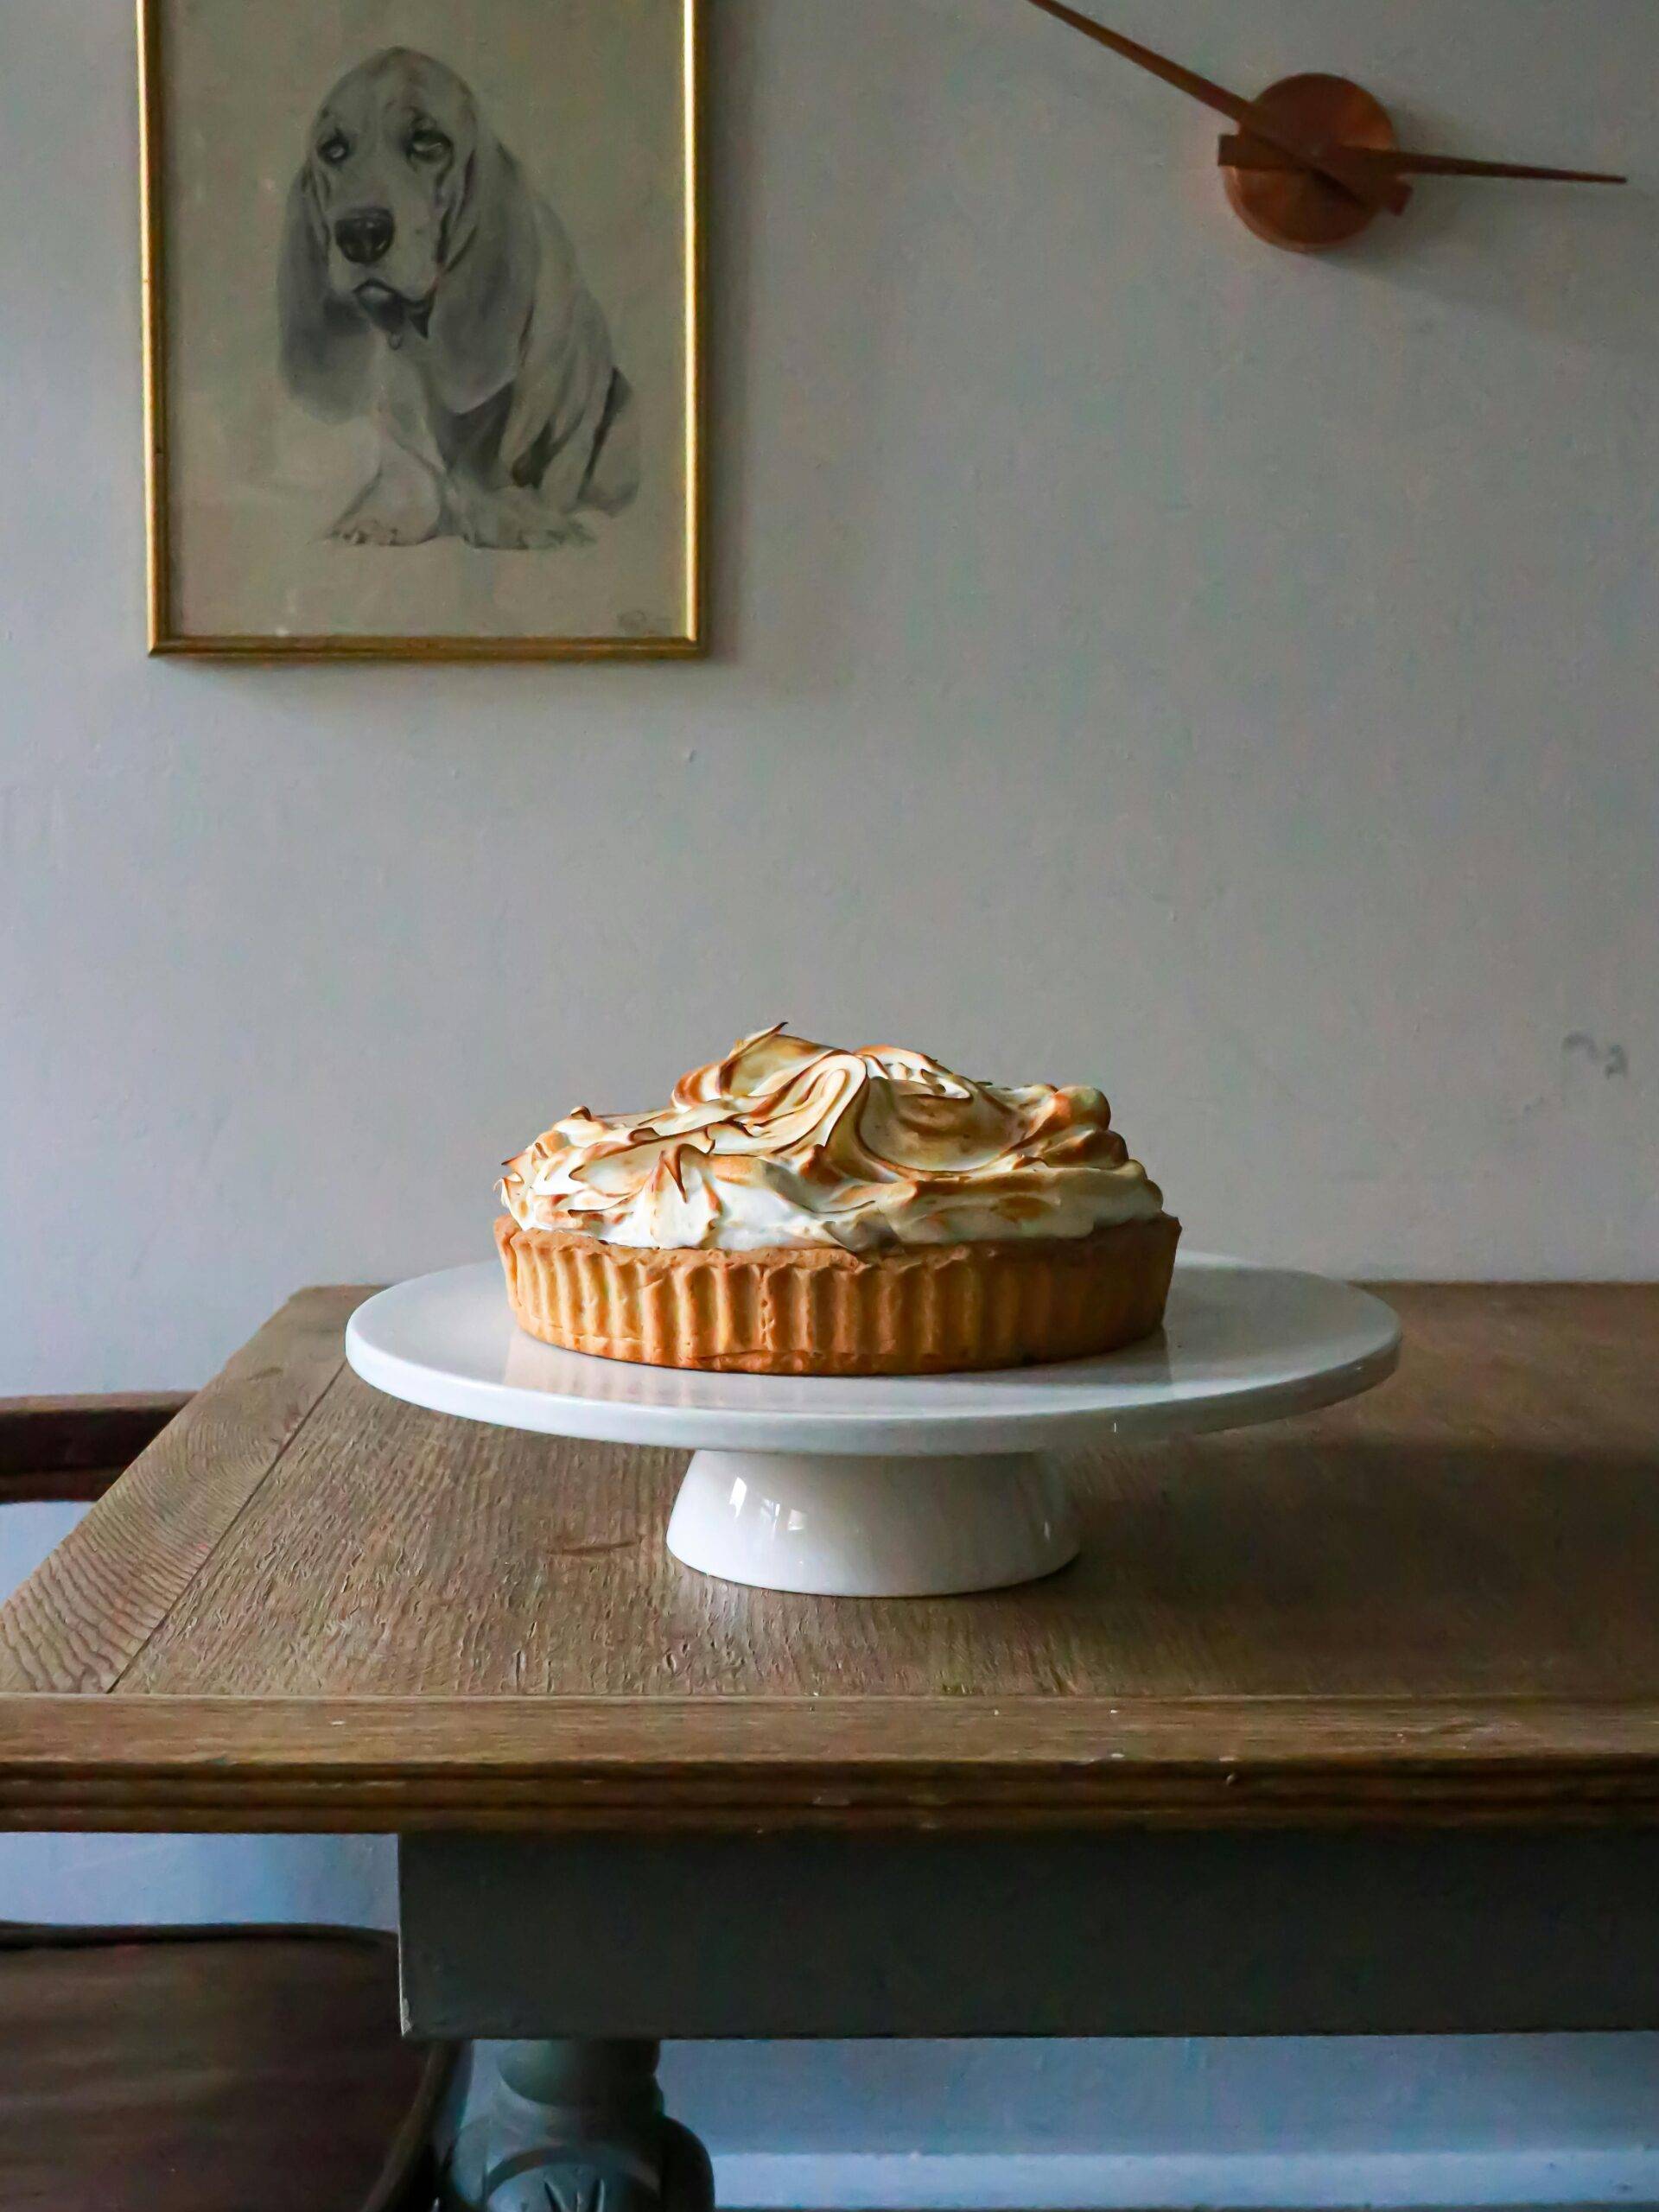 Zestful Delight: The Amazing Lemon Meringue Pie